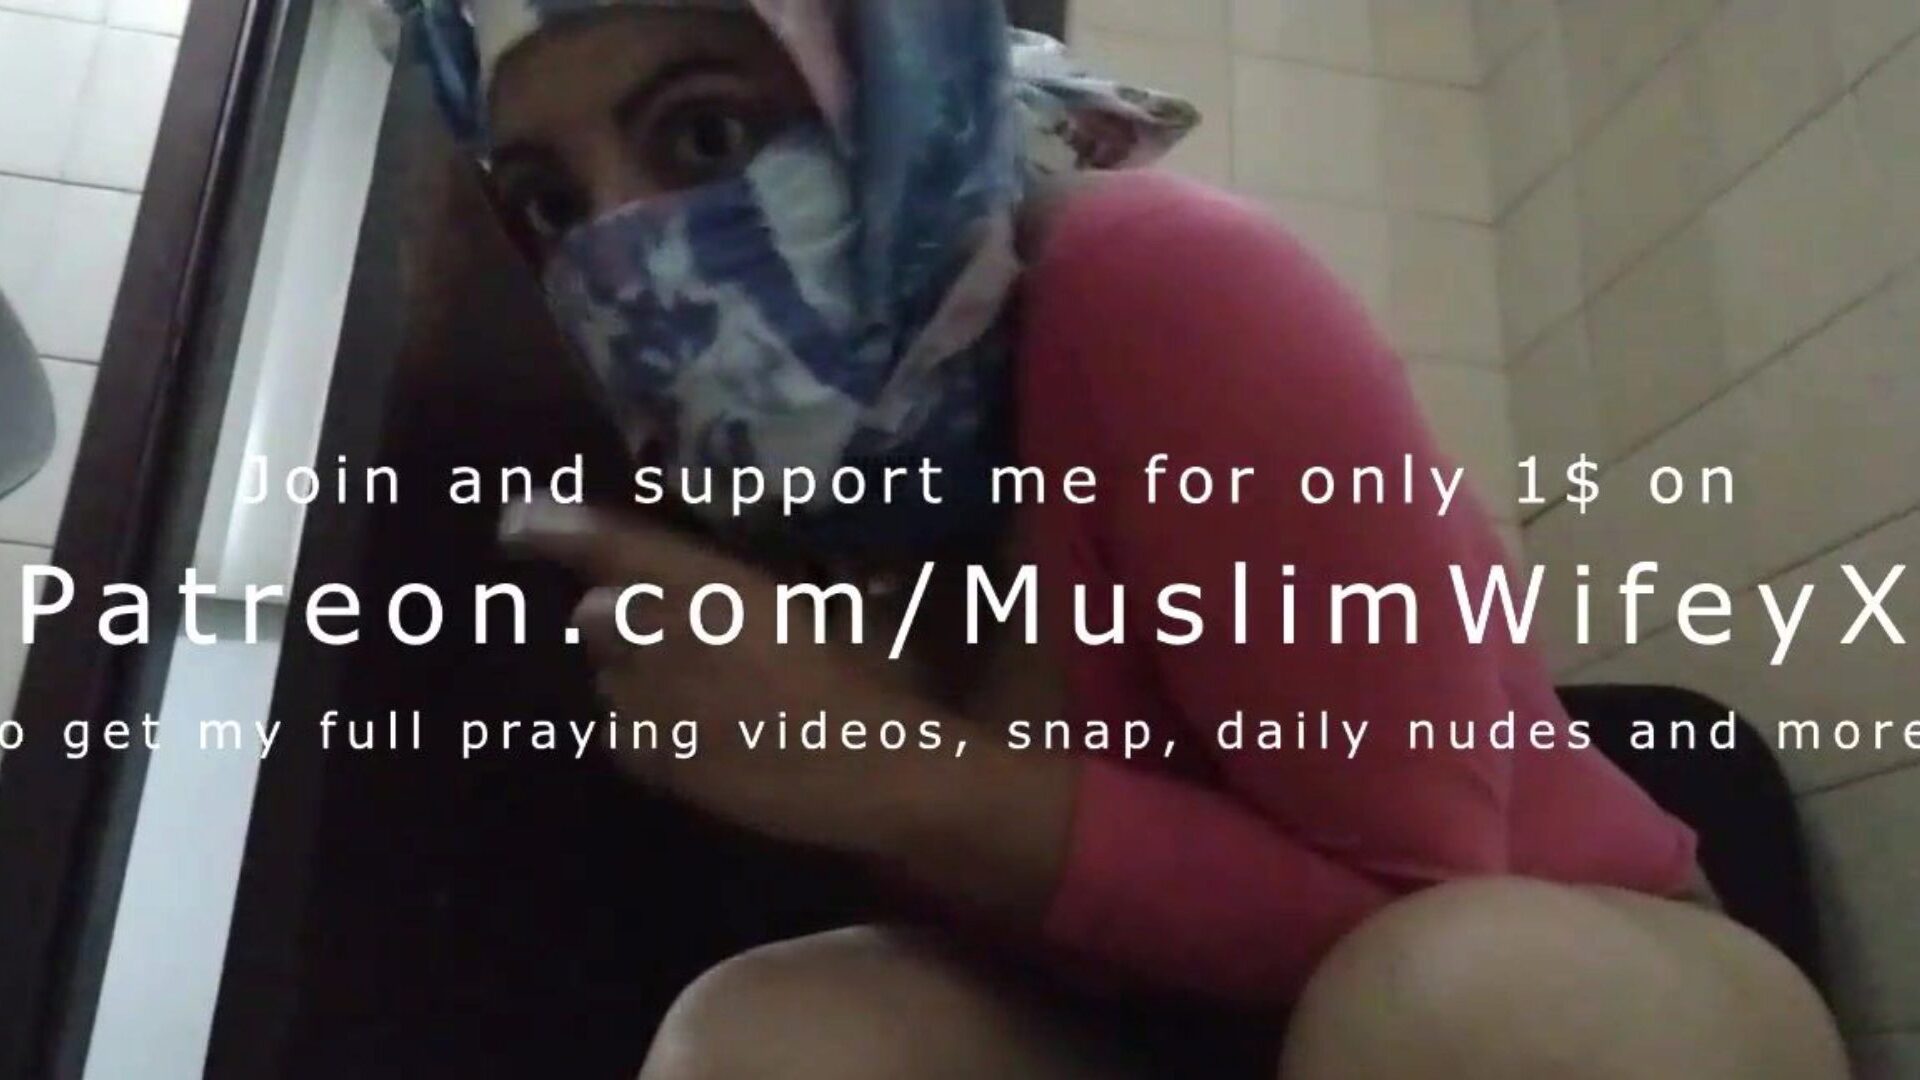 אמא מוסלמית חיג'בית אמיתית מנסה להישאר בשקט ולאוננת מאחורי בעלים בחזרה להתזות באורגזמה